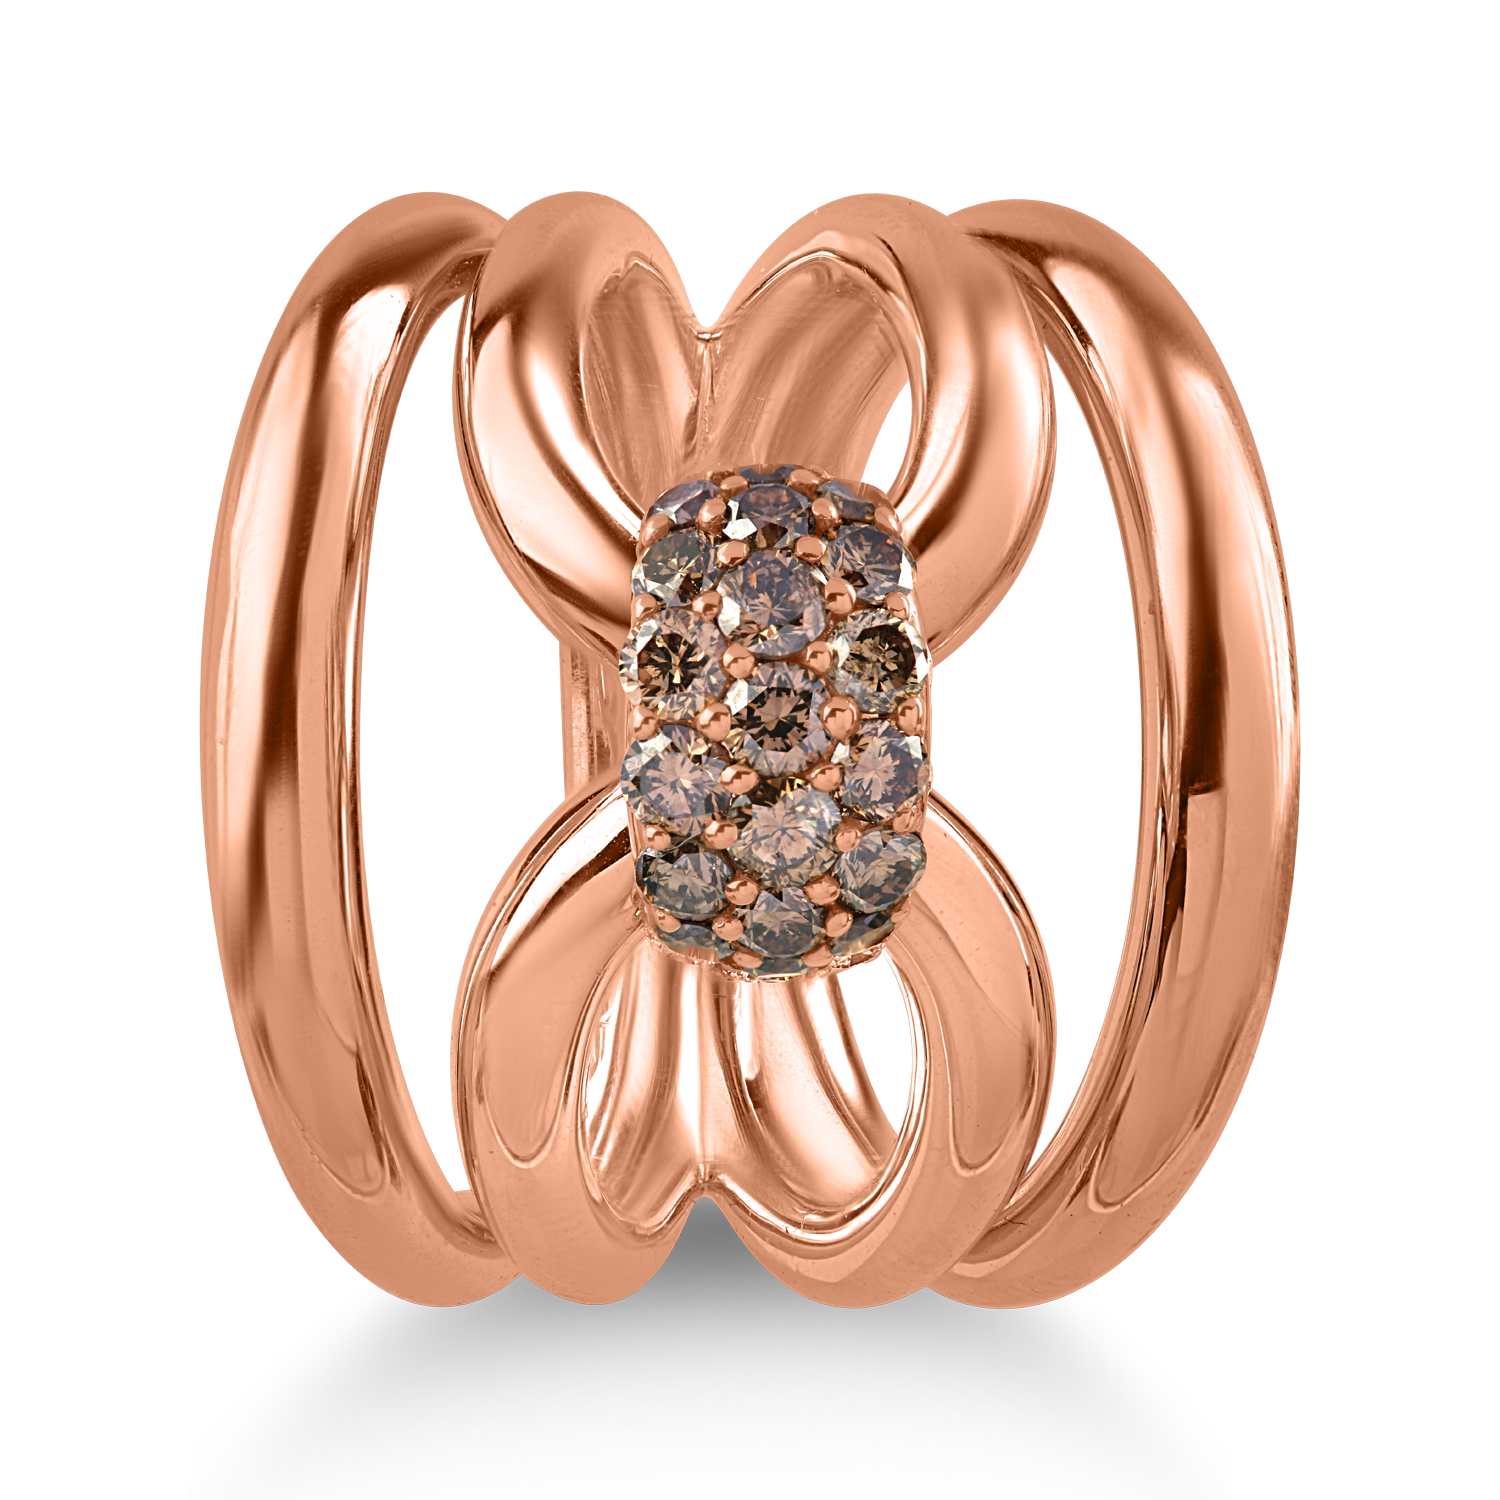 Rózsarany gyűrű 0.76ct barna gyémántokkal